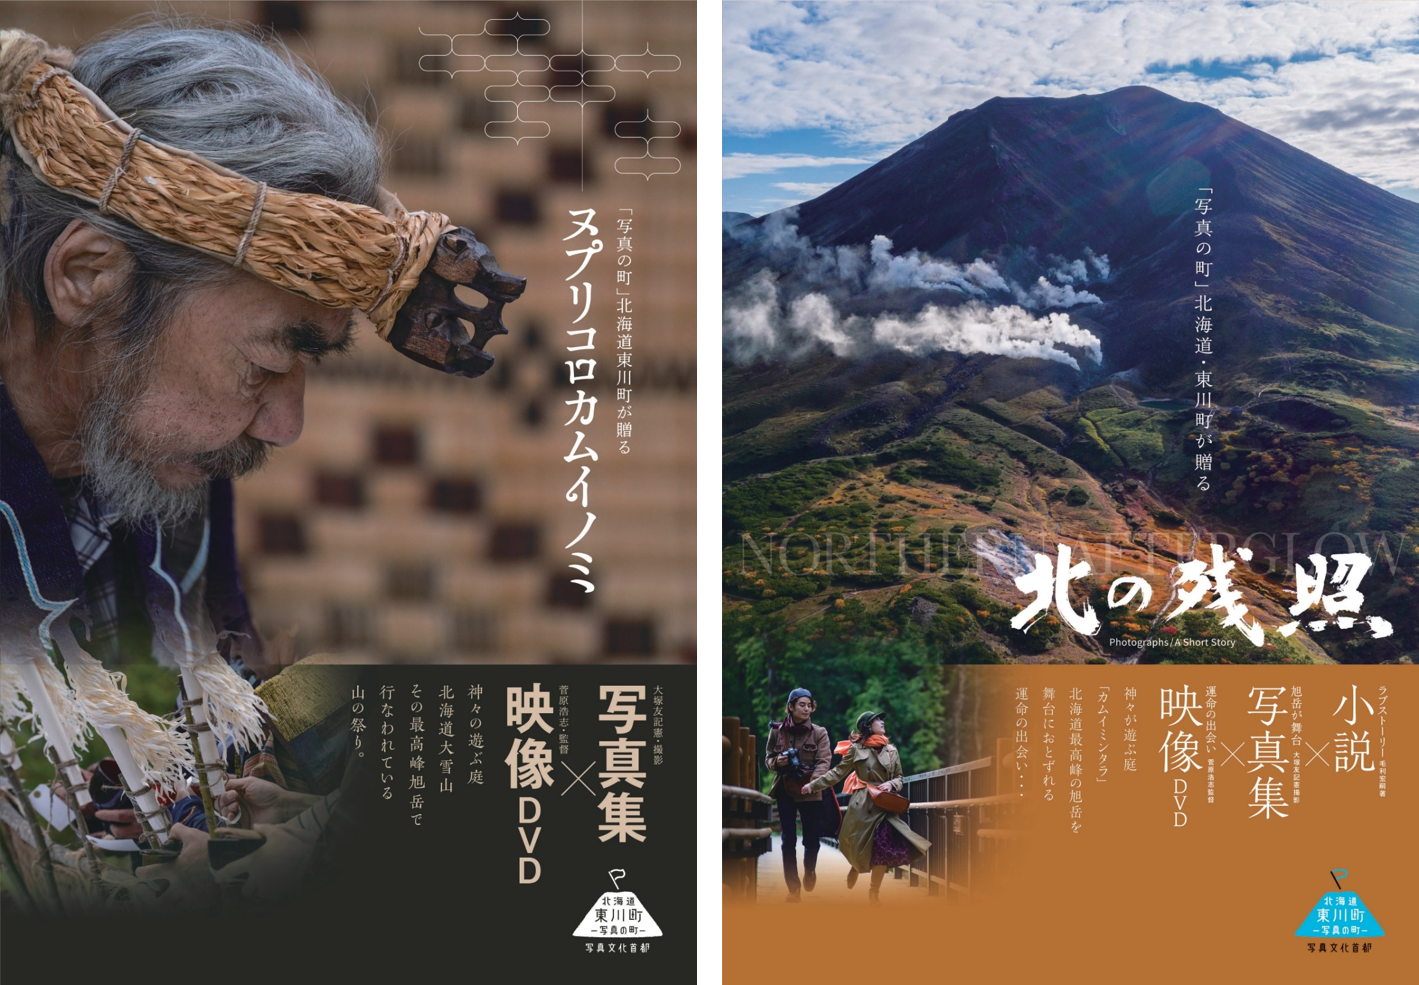 【北海道 東川町】大雪山文化を発信する動画・写真集、「ヌプリコロカムイノミ」「北の残照」を制作